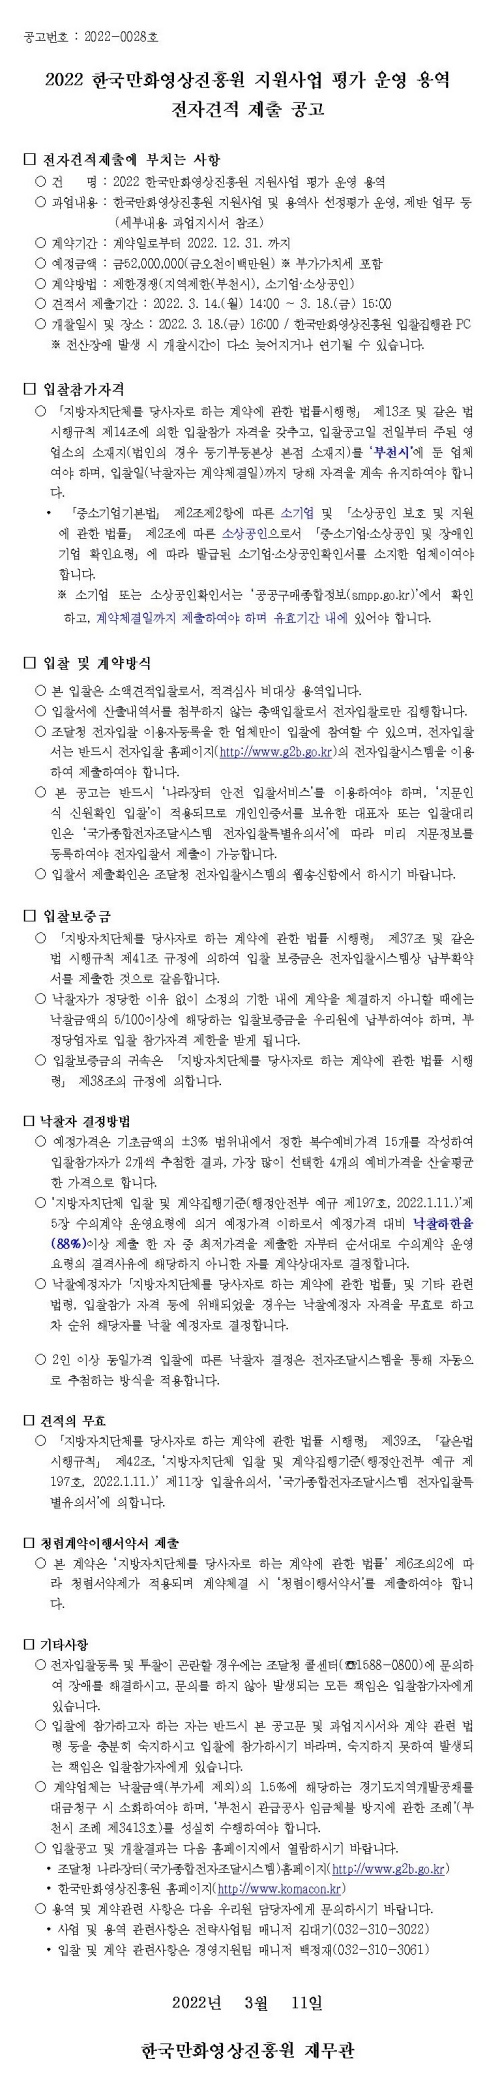 2022 한국만화영상진흥원 지원사업 평가 운영 용역 전자견적 제출 공고